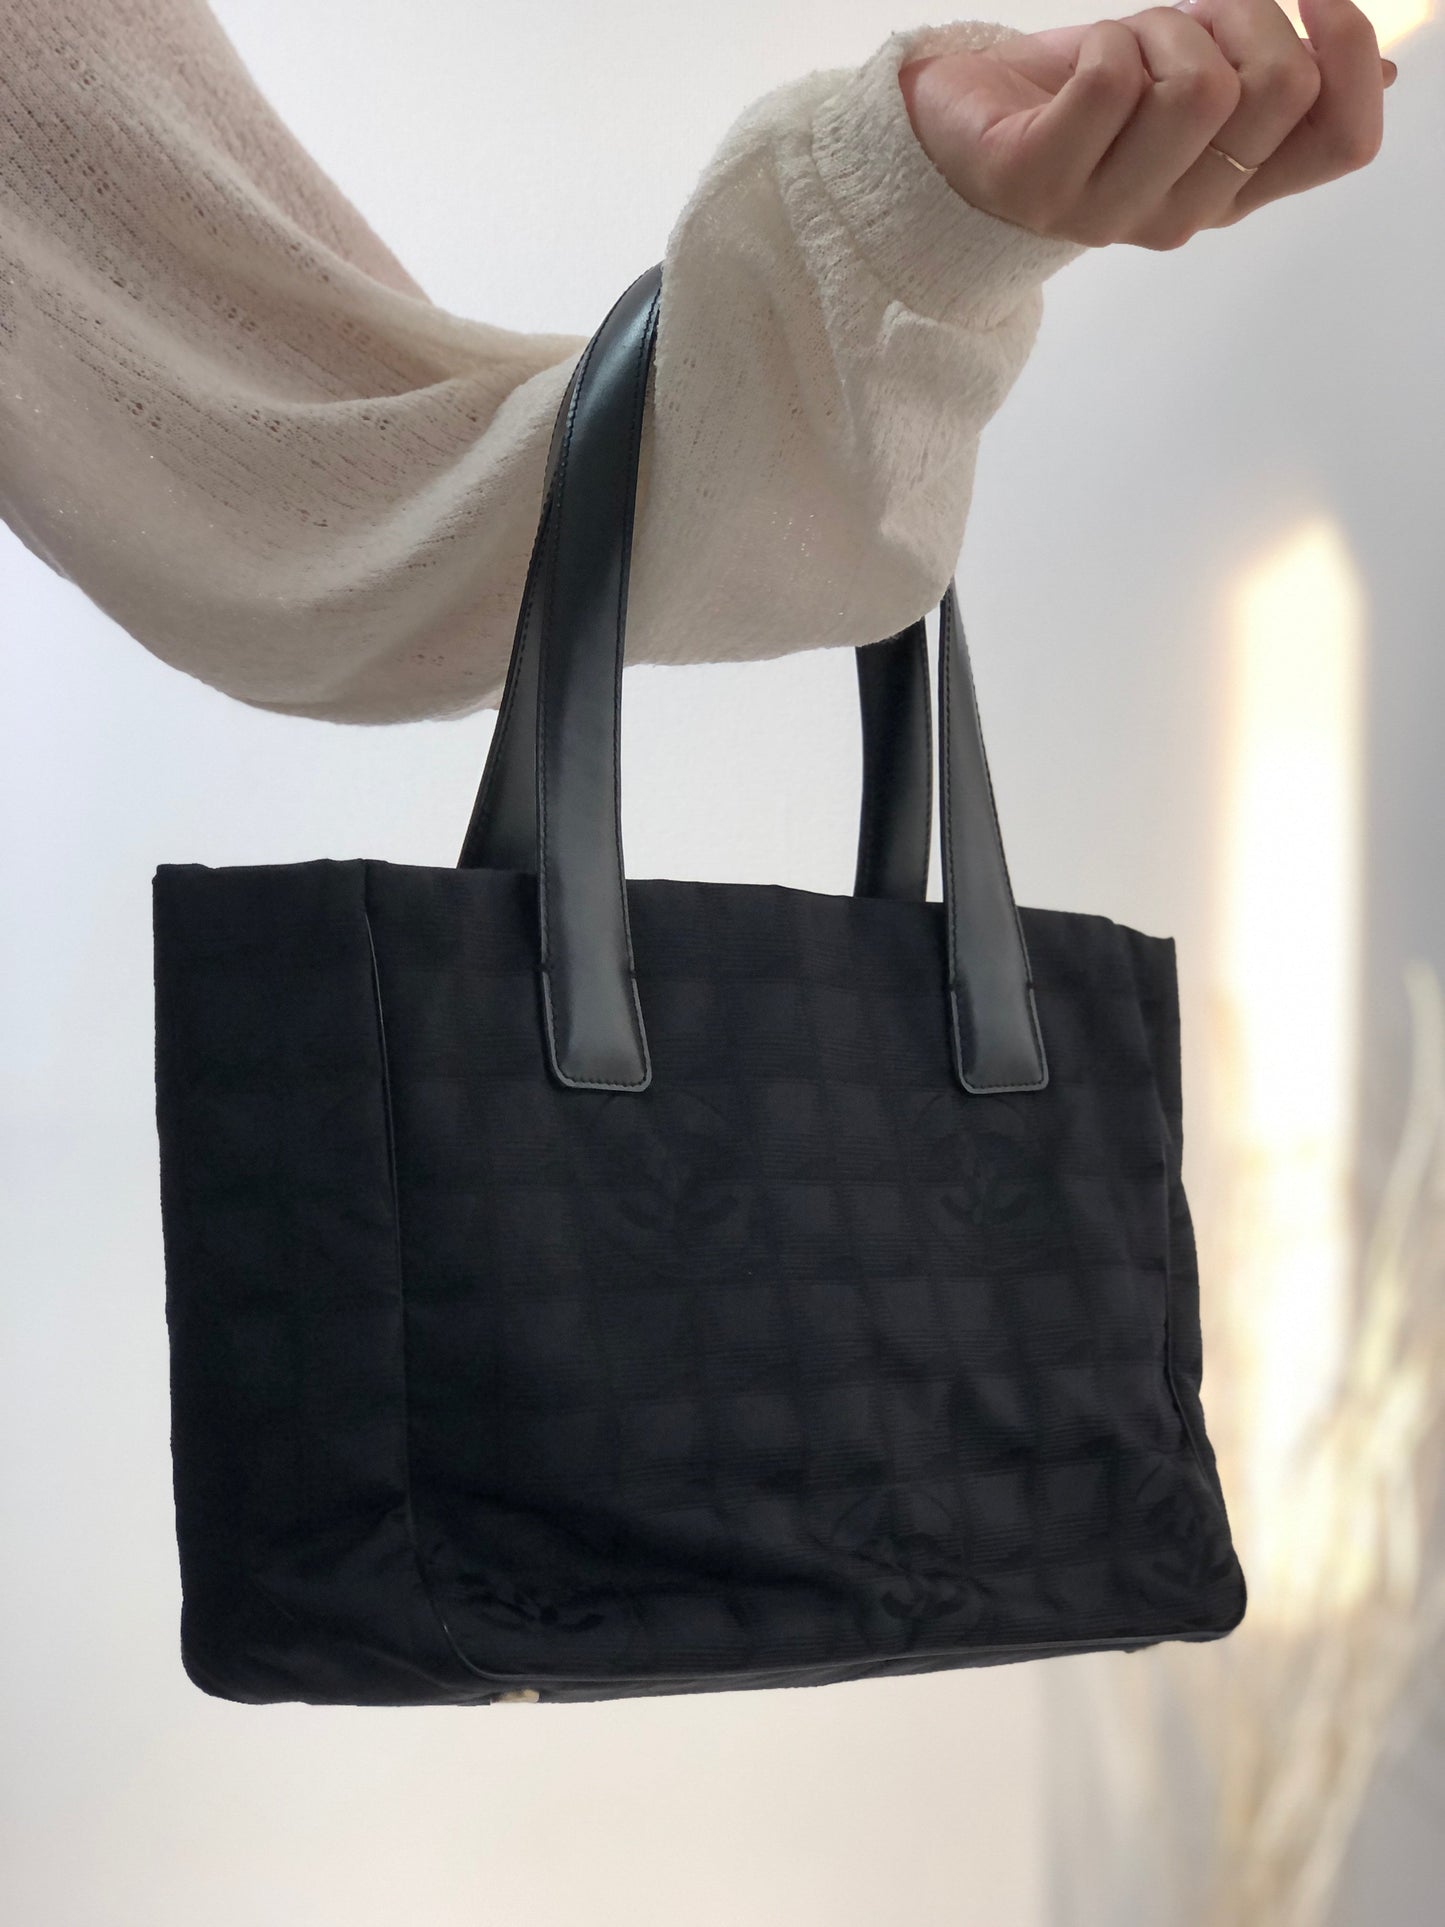 CHANEL New Travel Line PM Nylon Jacquard Handbag Tote Bag Black Old Vintage 8yw4tz